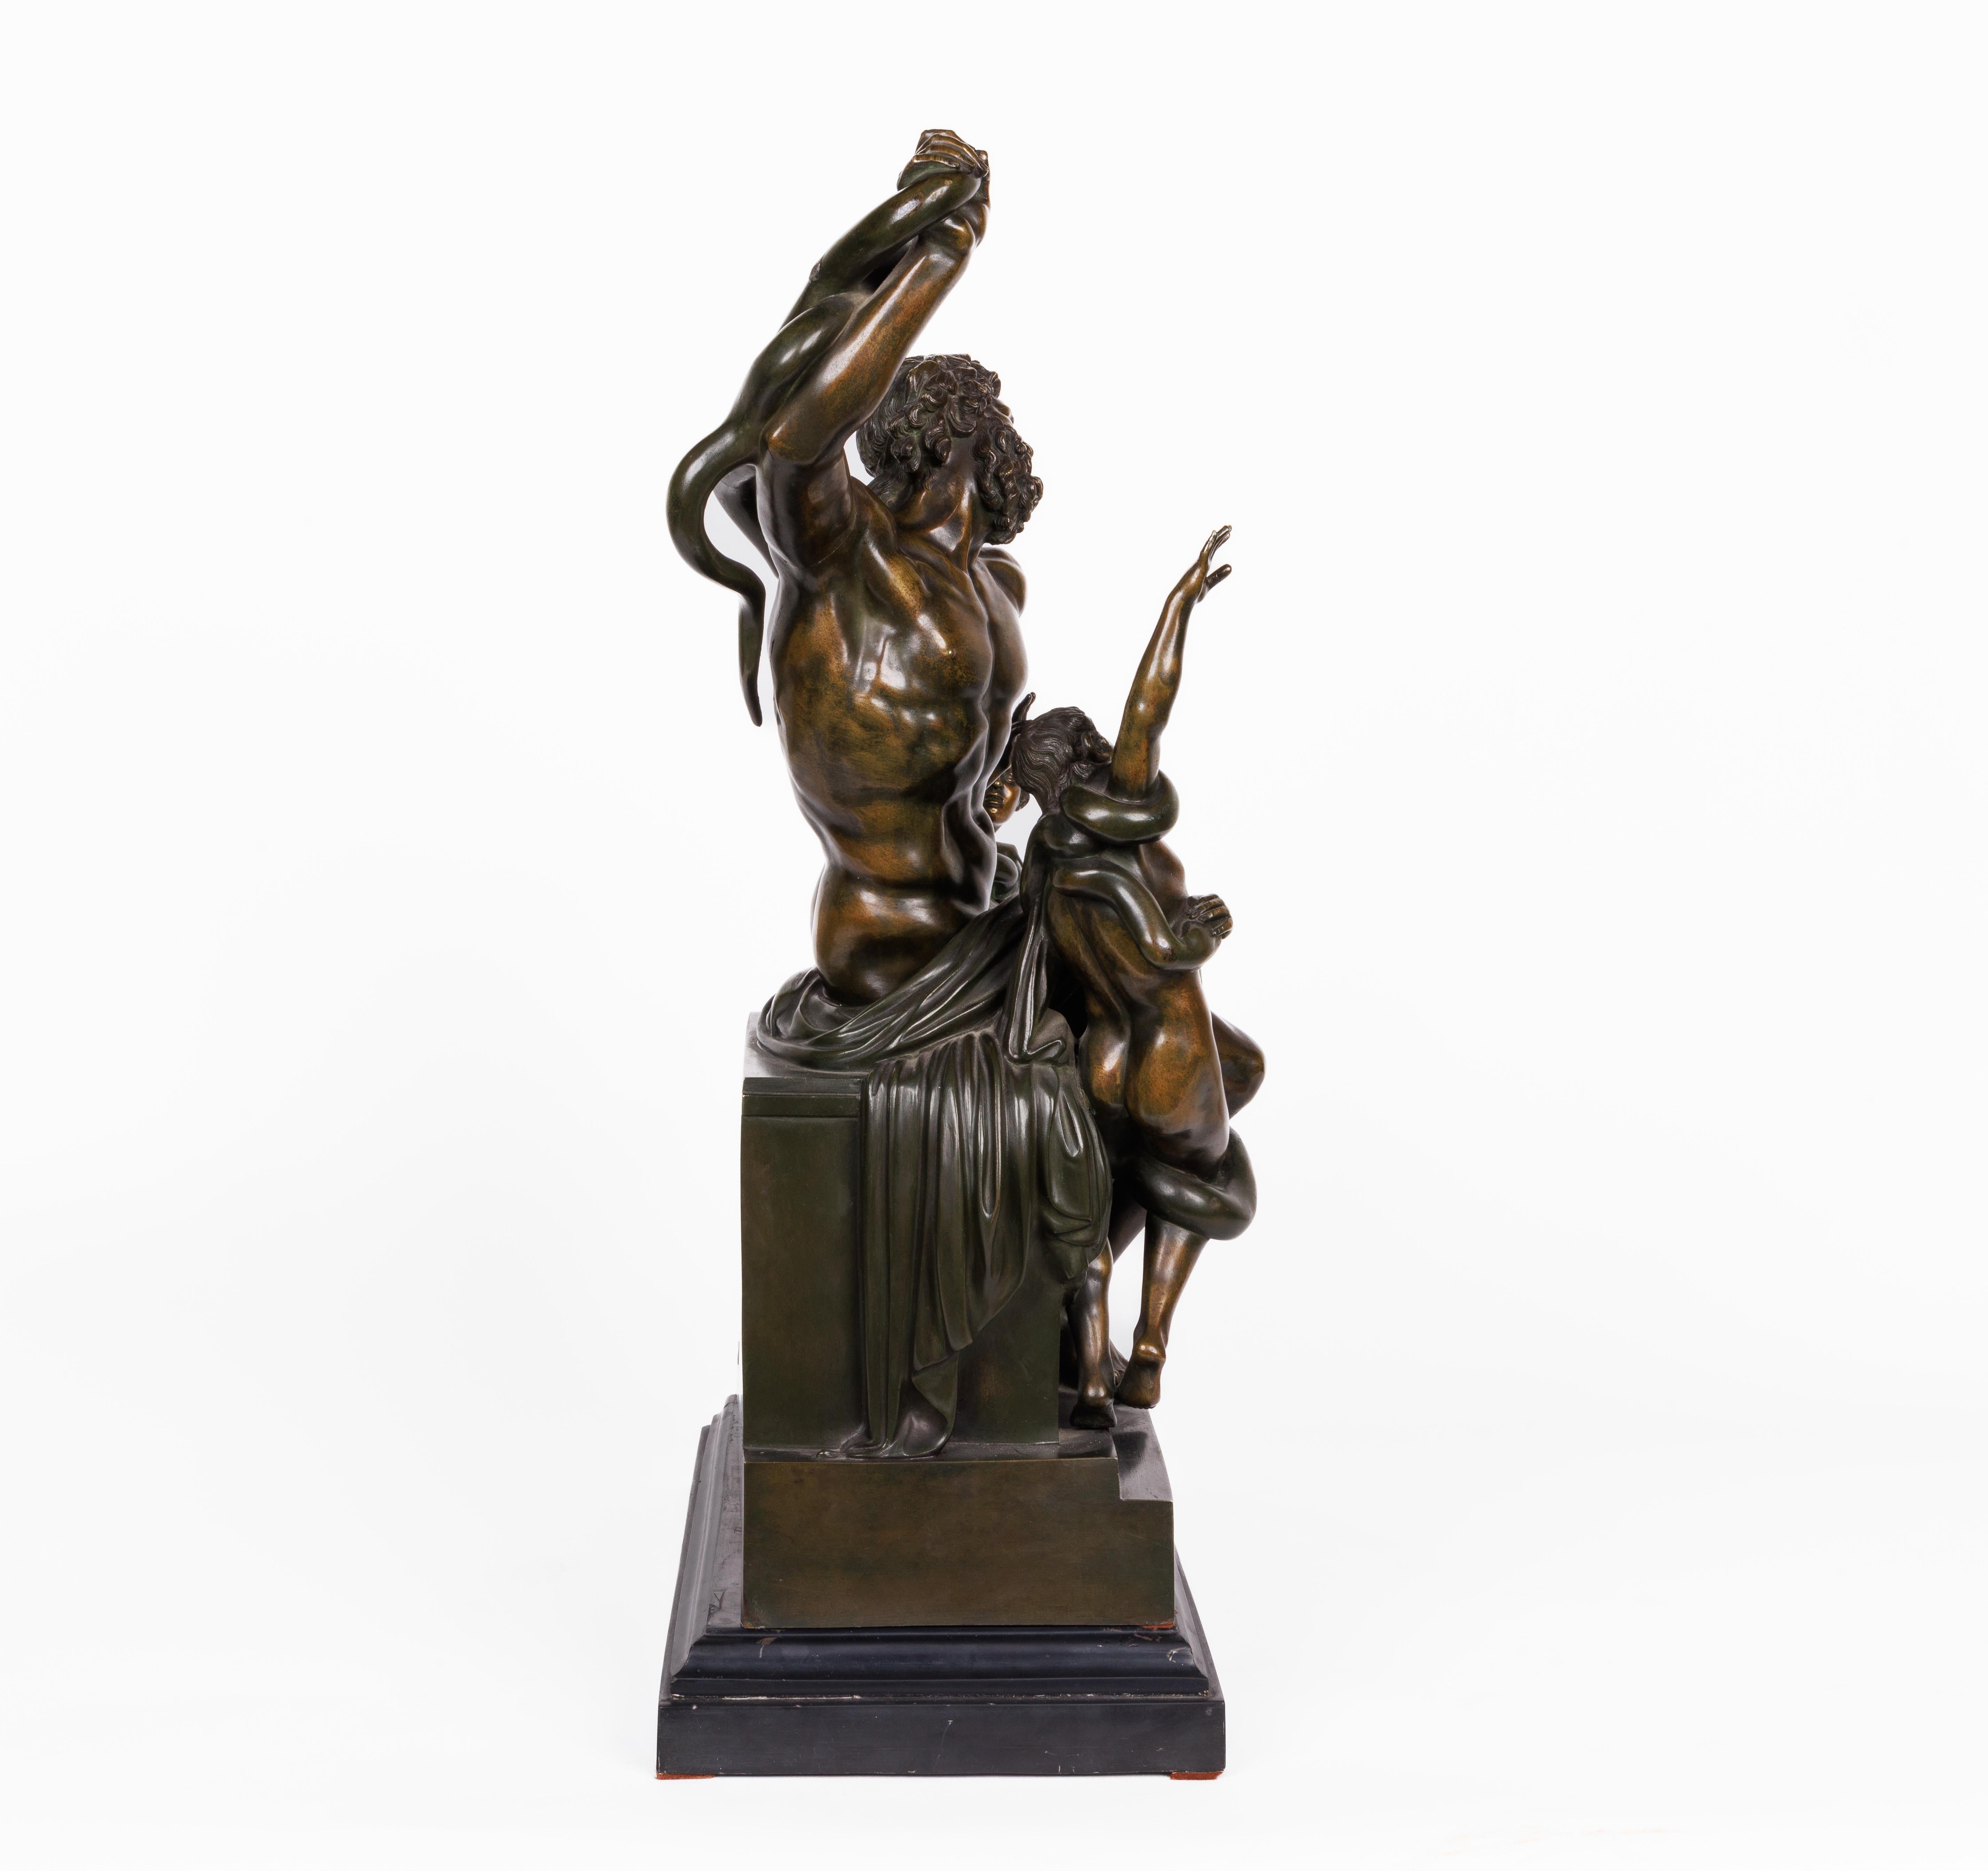 Italienische patinierte Bronzeskulptur von Laokoon und seinen Söhnen, nach der Antike von Agesander von Rhodos, um 1870

Sehr schöne Qualitätsskulptur, die auf einem schwarzen Schiefersockel steht. Wir haben an dieser Skulptur keine Spuren